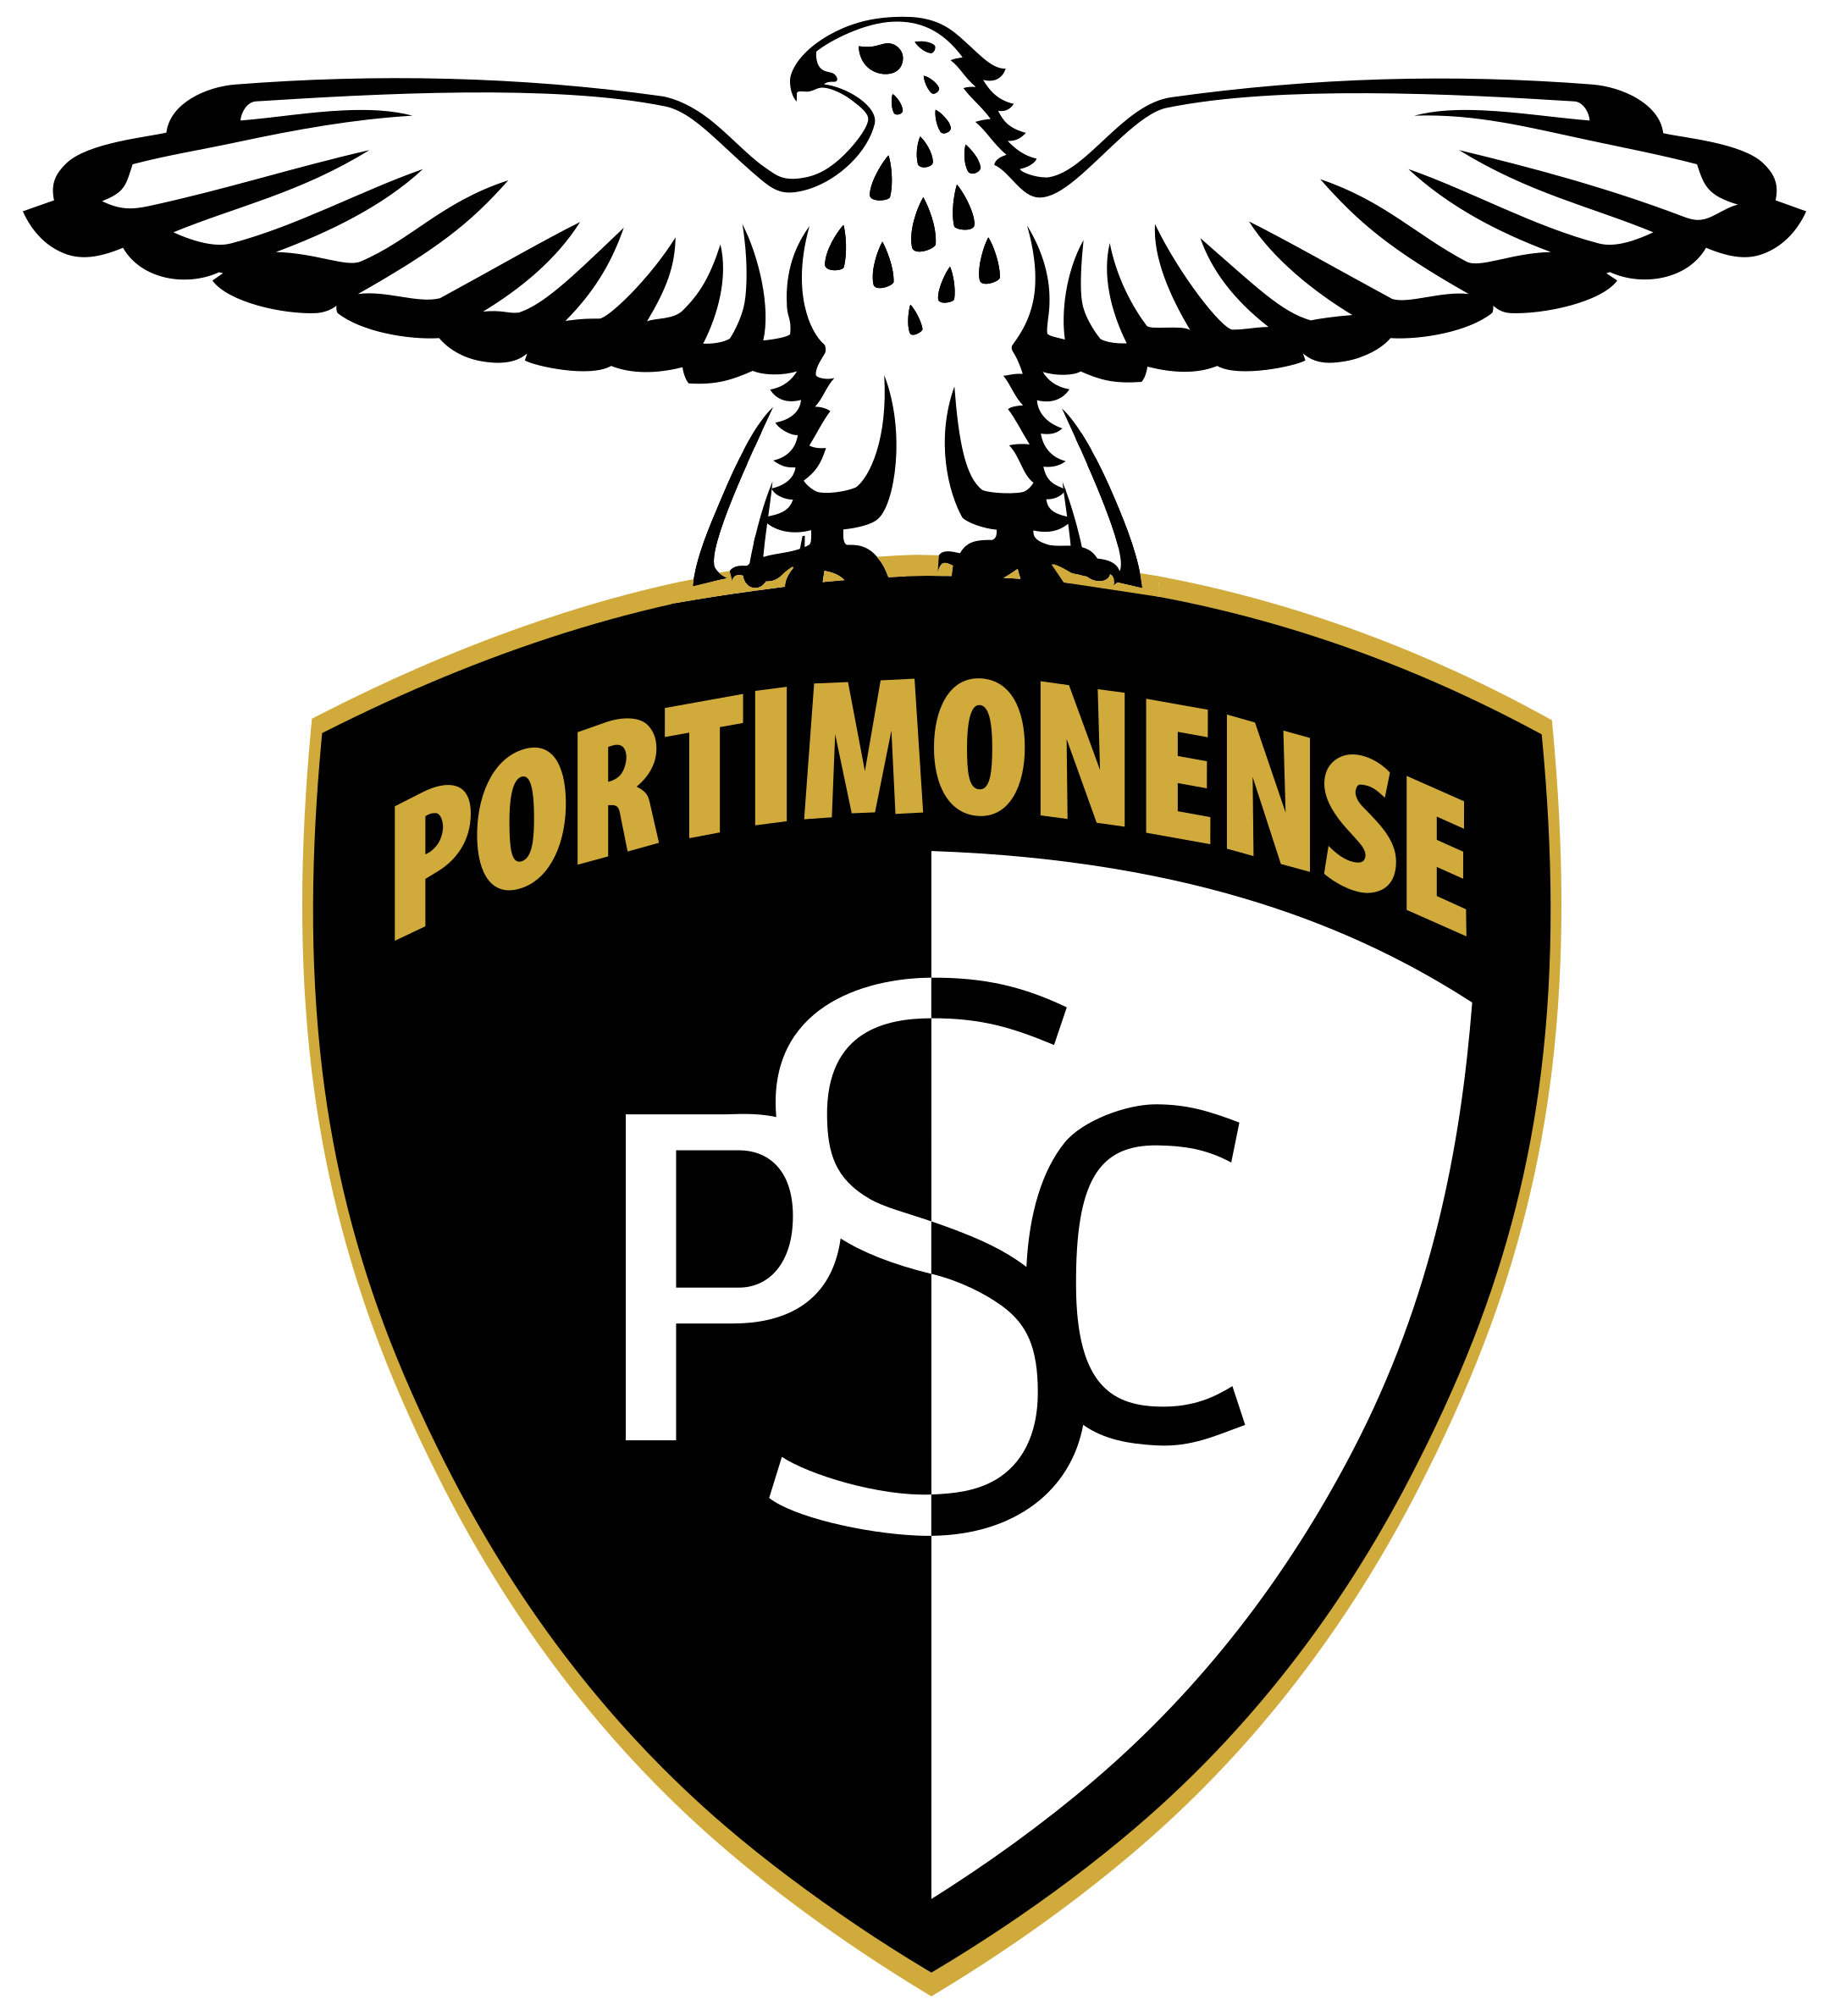 portimonense sc logo 1 - Portimonense SC Logo